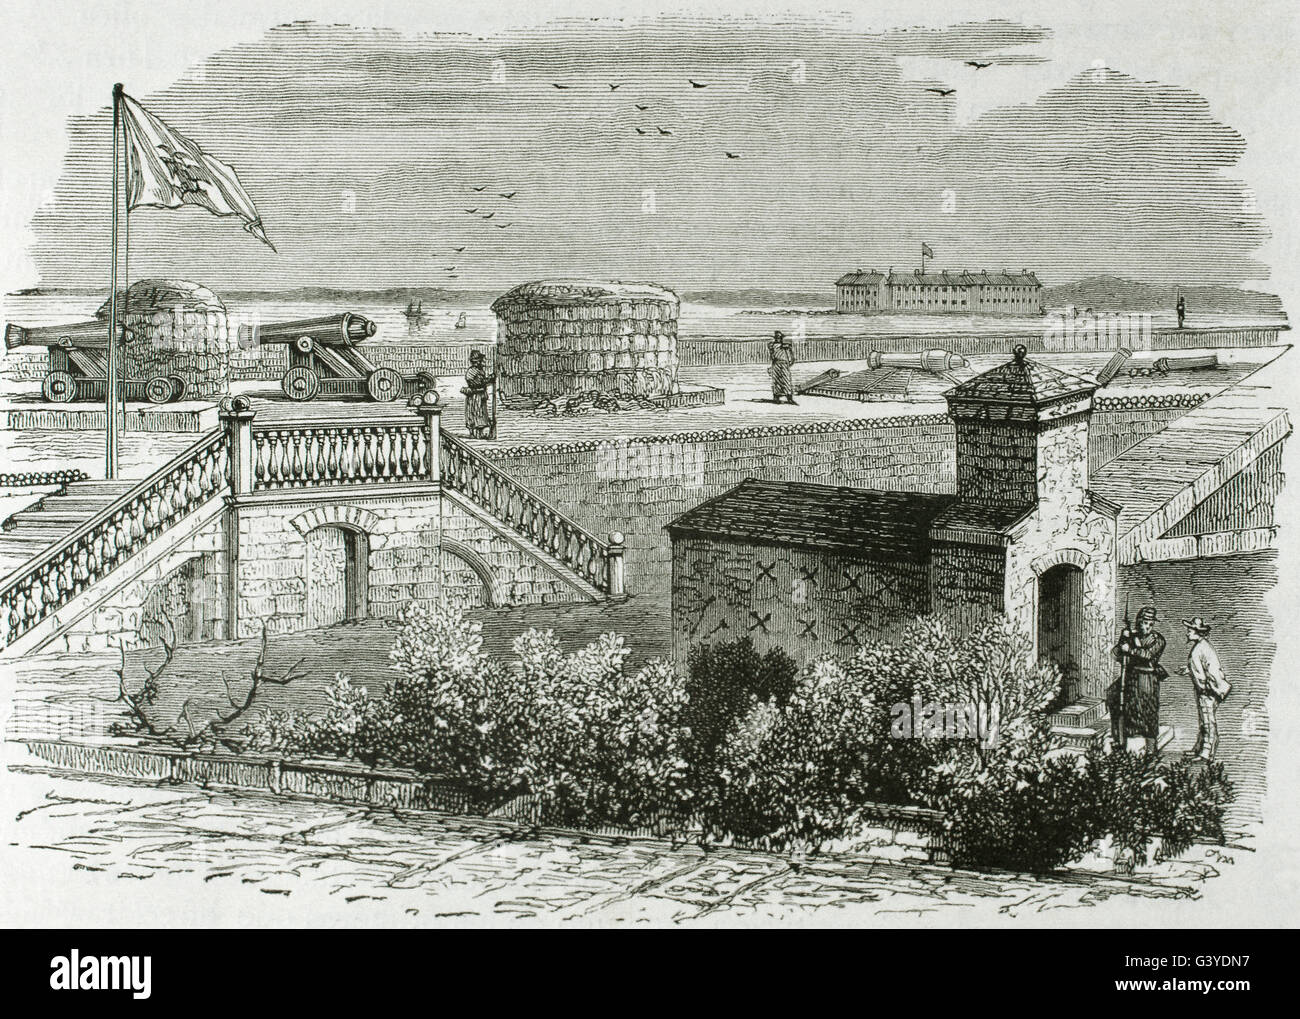 USA. Amerikanischer Bürgerkrieg (1861-1865). Verteidigung der Multrie Fort und Fort Sumter im Jahre 1861. South Carolina. Gravur. Stockfoto